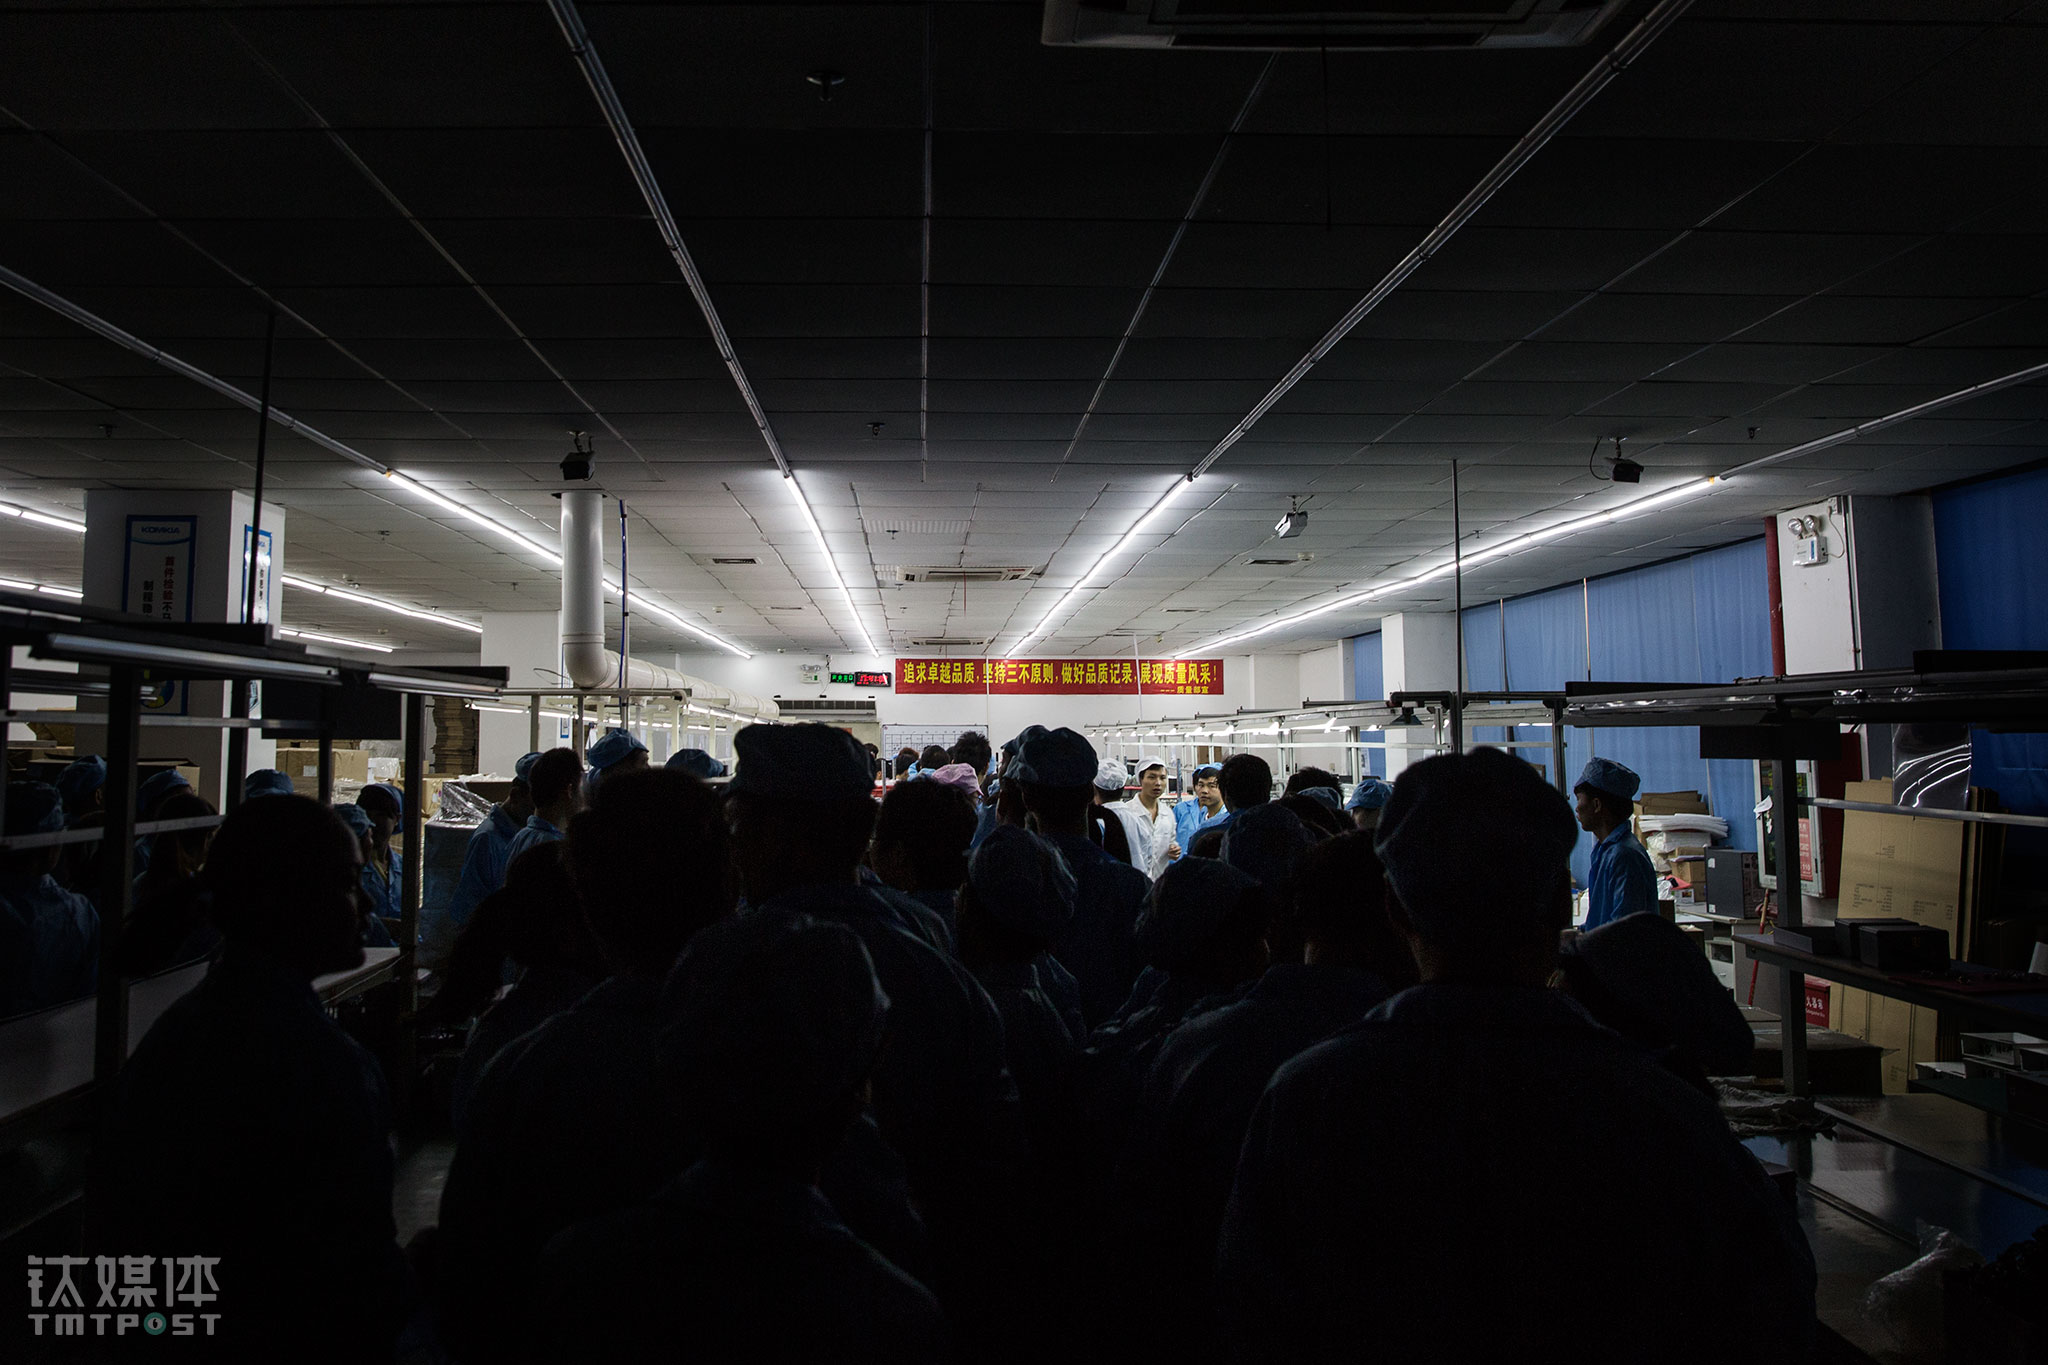 下班铃声响起，生产线停止运转，200名工人走向车间出口。这一天，北京雾霾加重，智能口罩和空气净化器订单加量，这些工人里，有些人过1个小时后又要返回这里加班。